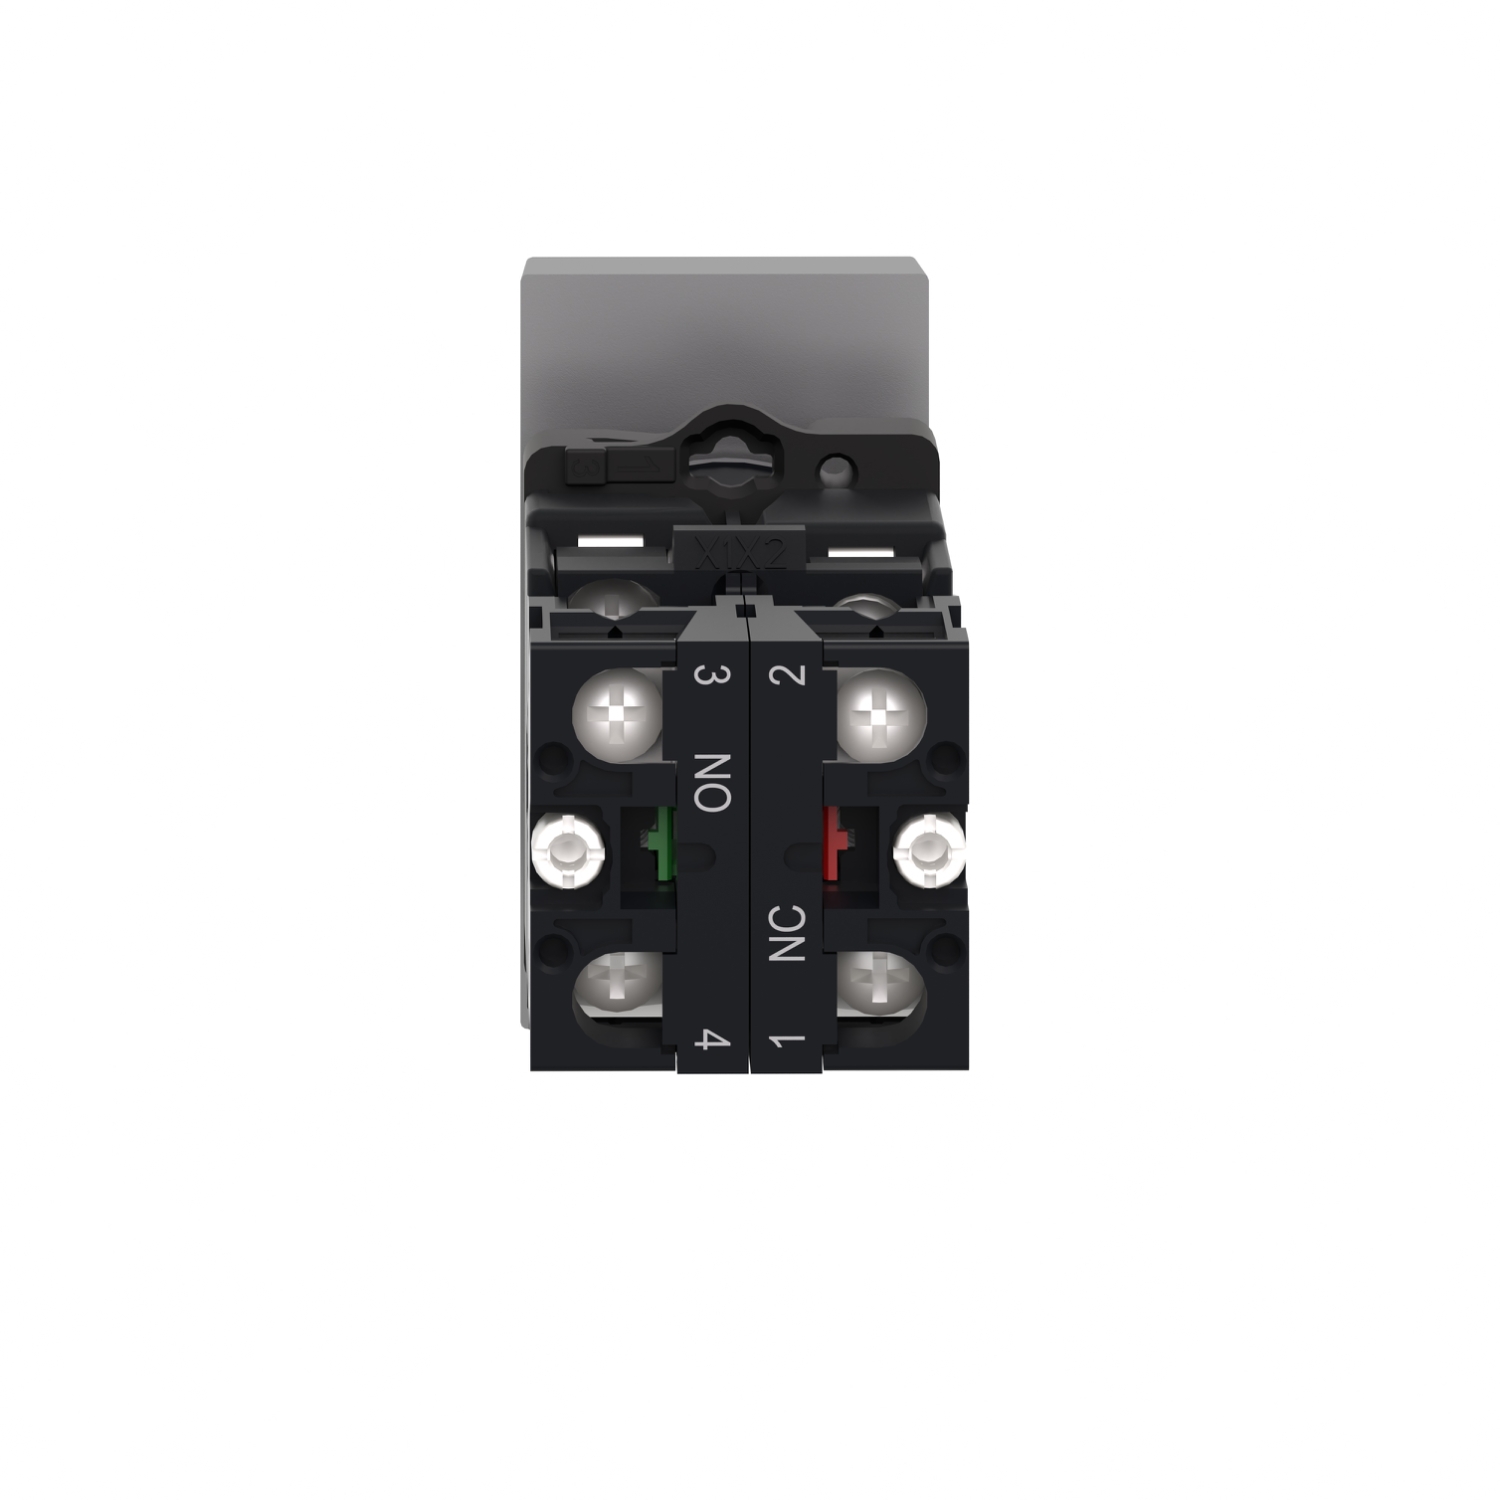 XA2EW7L3741M5 - Illuminated double headed push button, Easy Harmony XA2,  plastic, 22mm, 1 green flush I + 1 light + 1 red flush O, 220…230V AC, 1NO  + 1NC